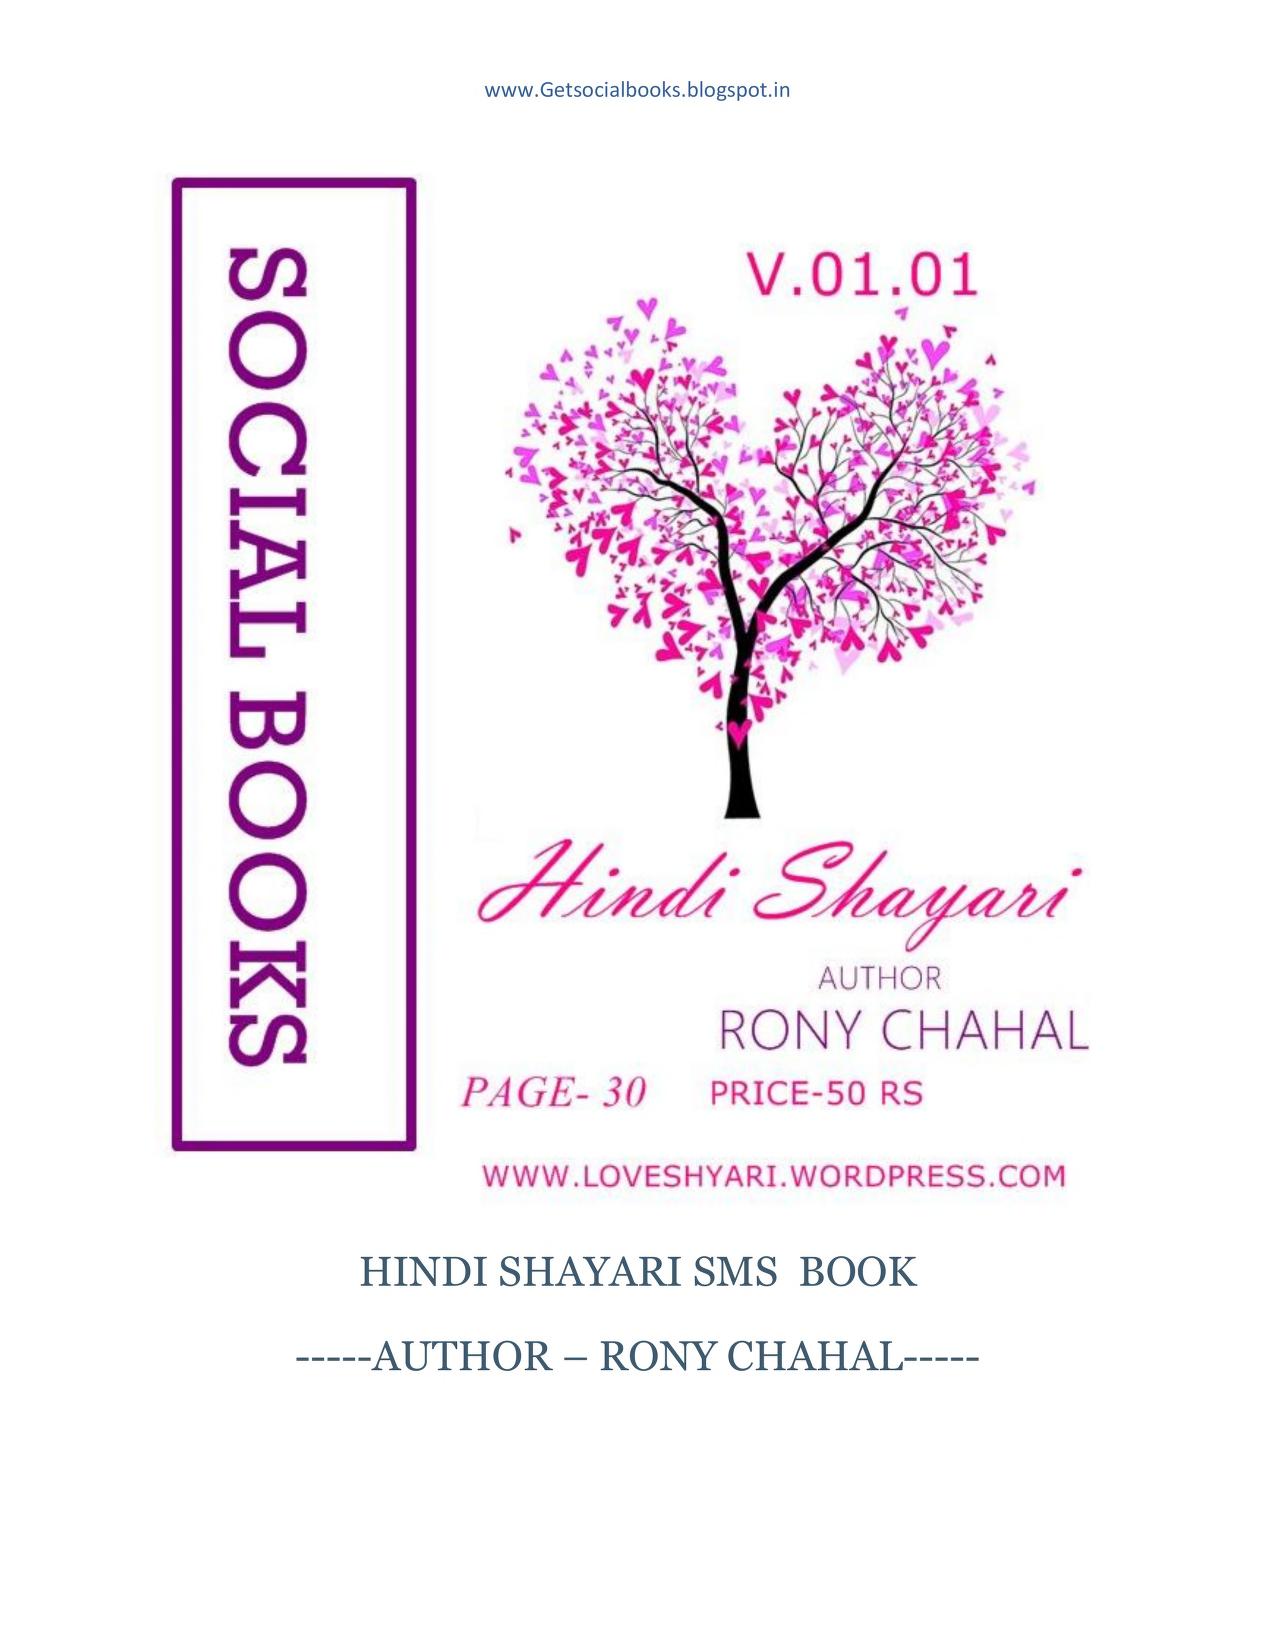 HINDI SHAYARI BOOK by Rony : Shayari : Free Download, Borrow, and Streaming  : Internet Archive